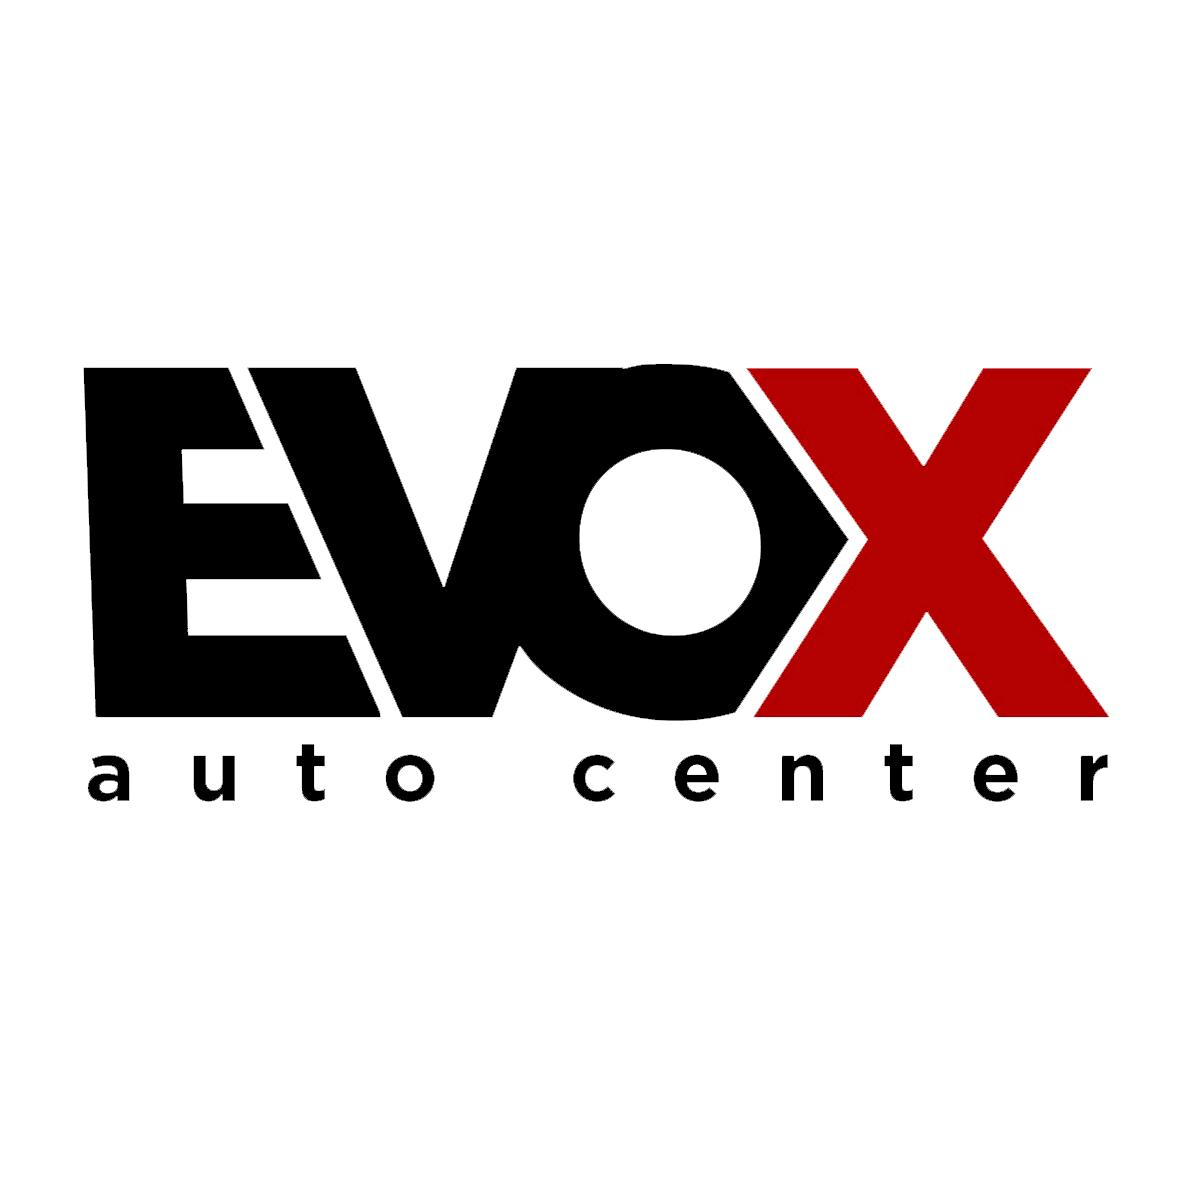 Evox Auto Center